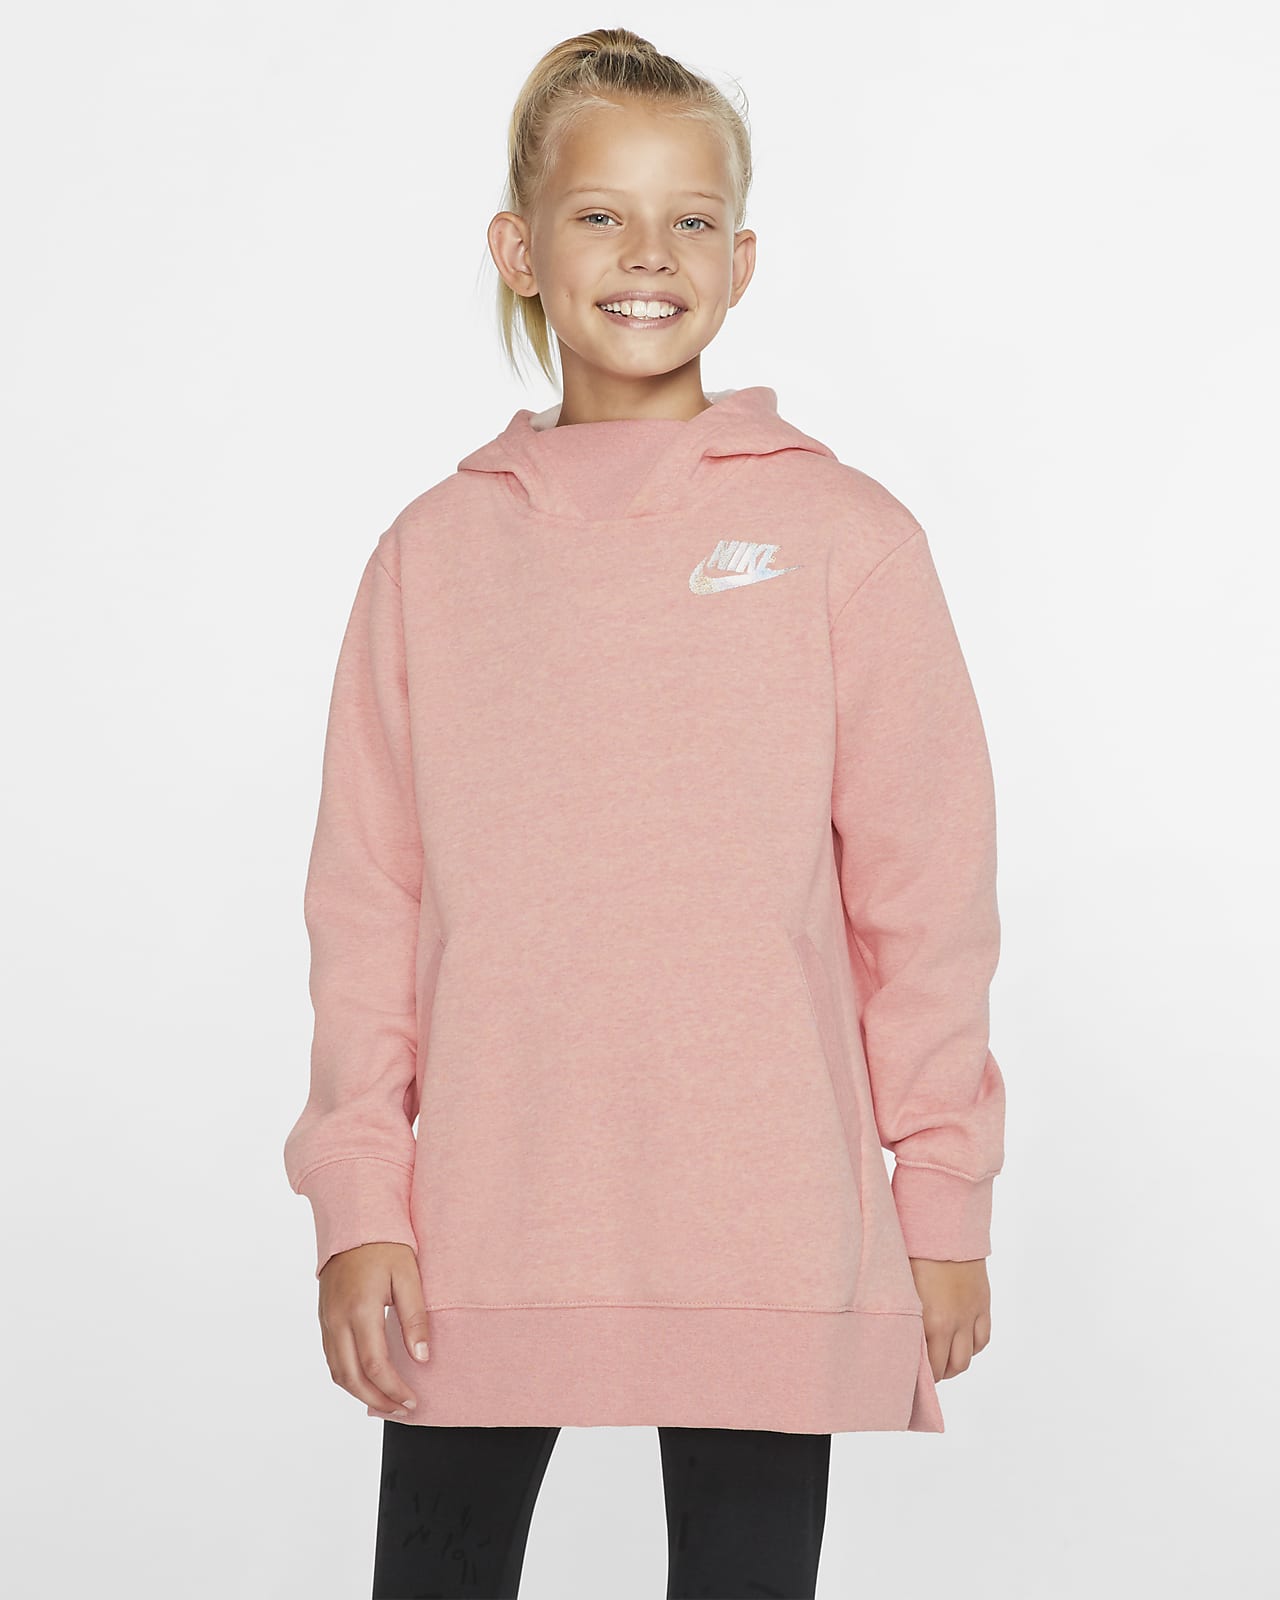 Nike Sportswear Older Kids' (Girls') Fleece Top